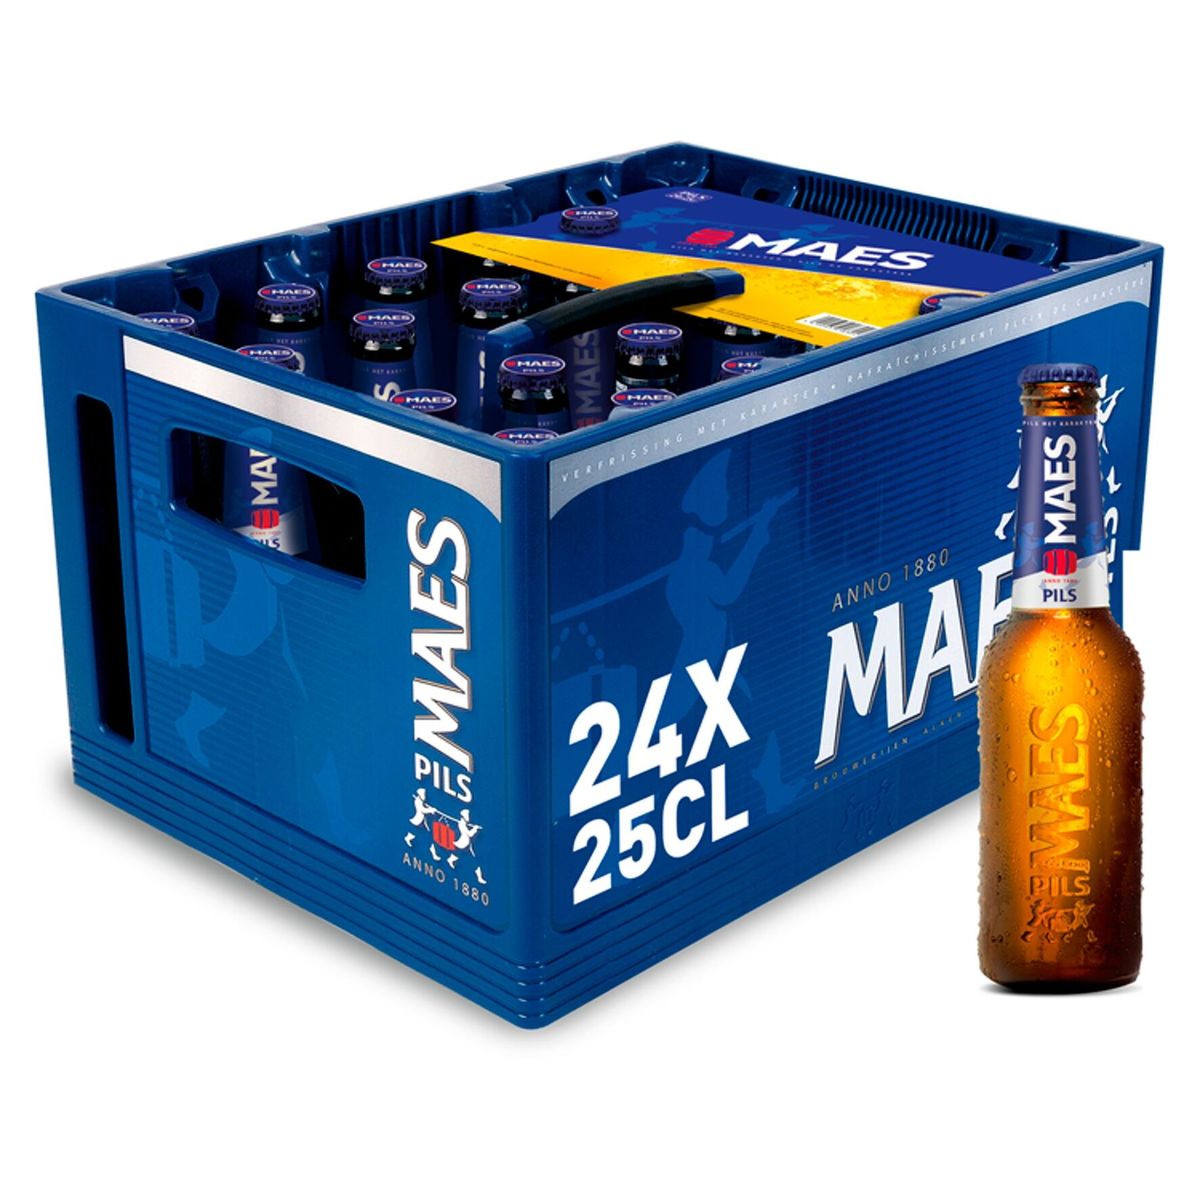 Maes Blond bier Pils 5.2% ALC 24x25cl Bak